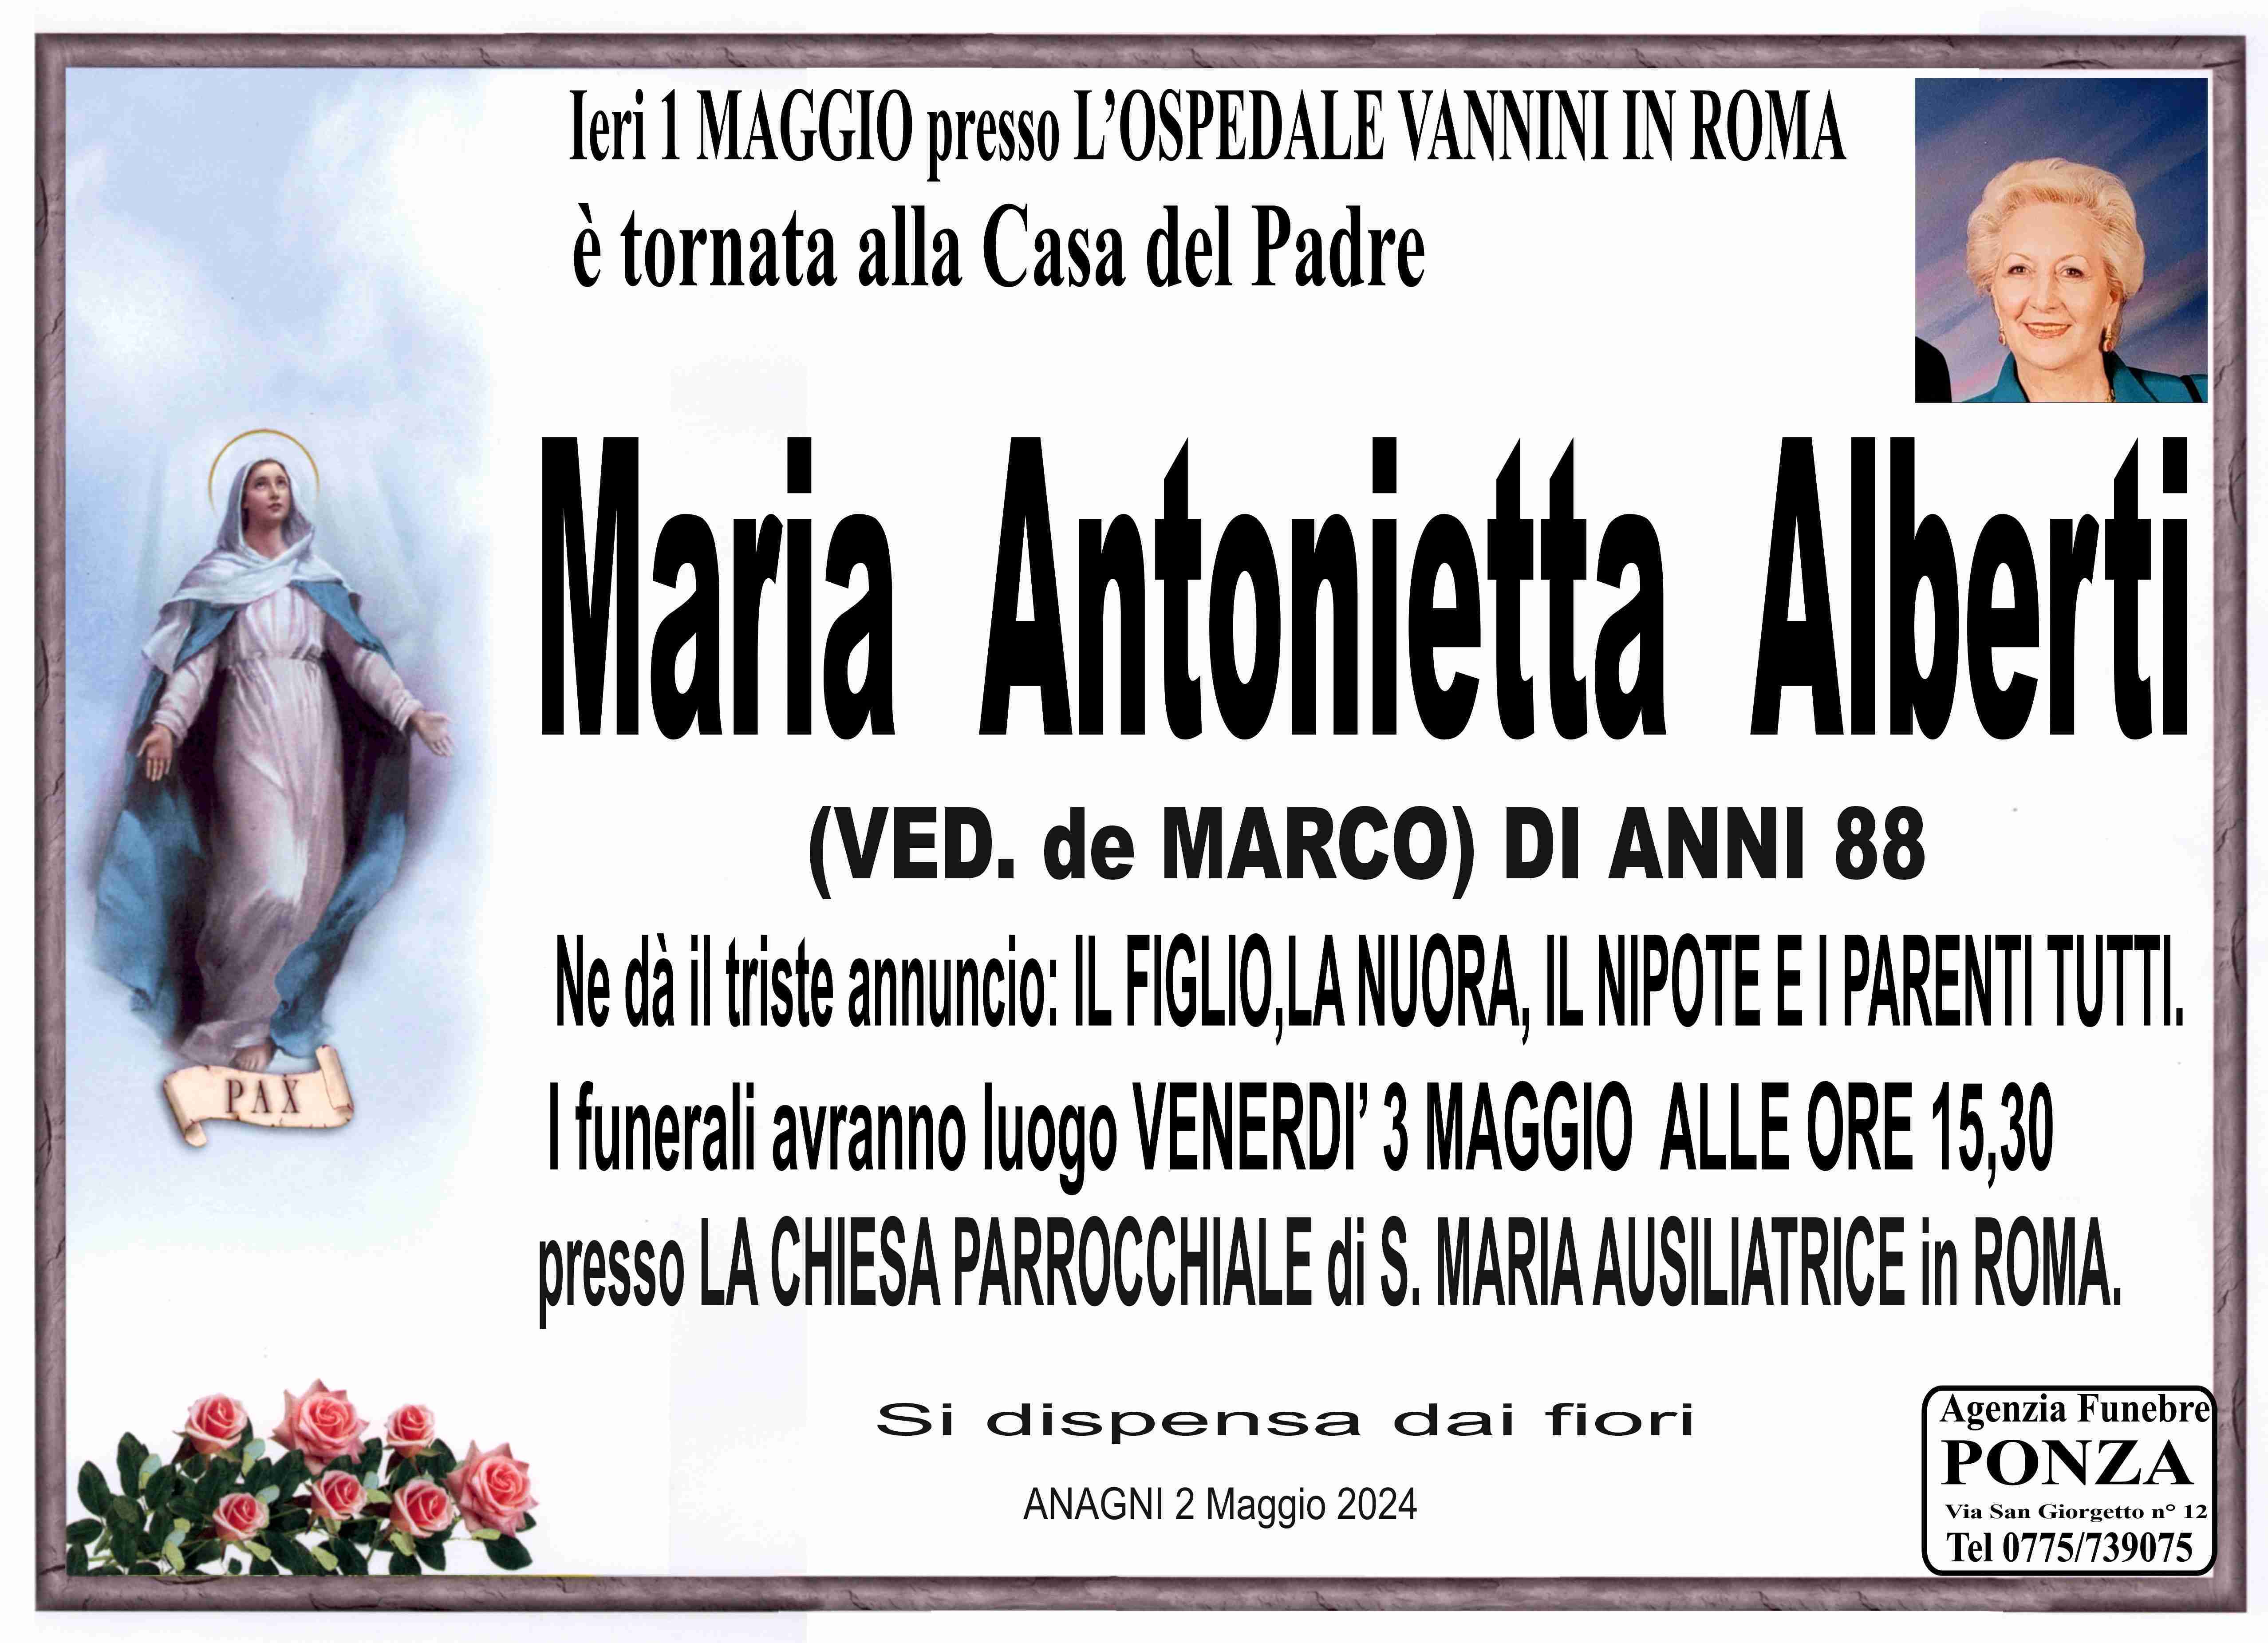 Maria Antonietta Alberti